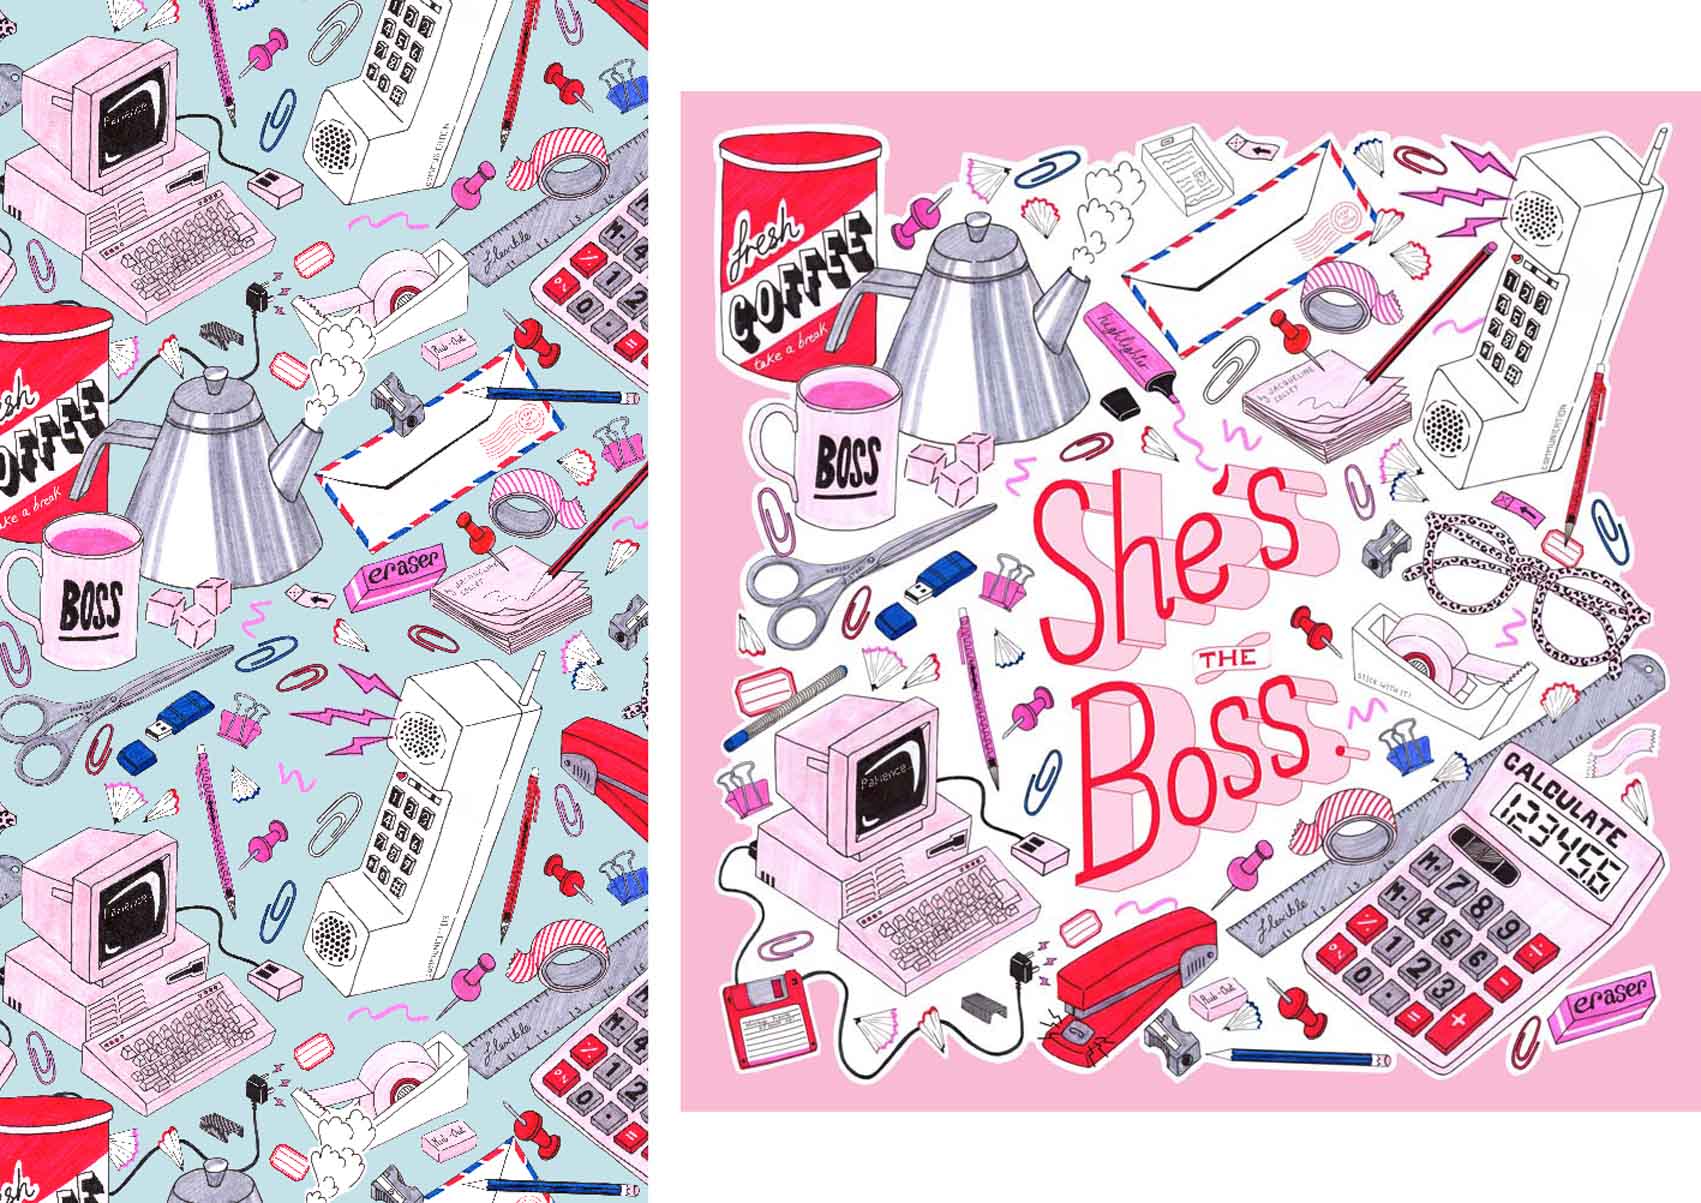 She's-The-Boss-Riso-Print-3.jpg